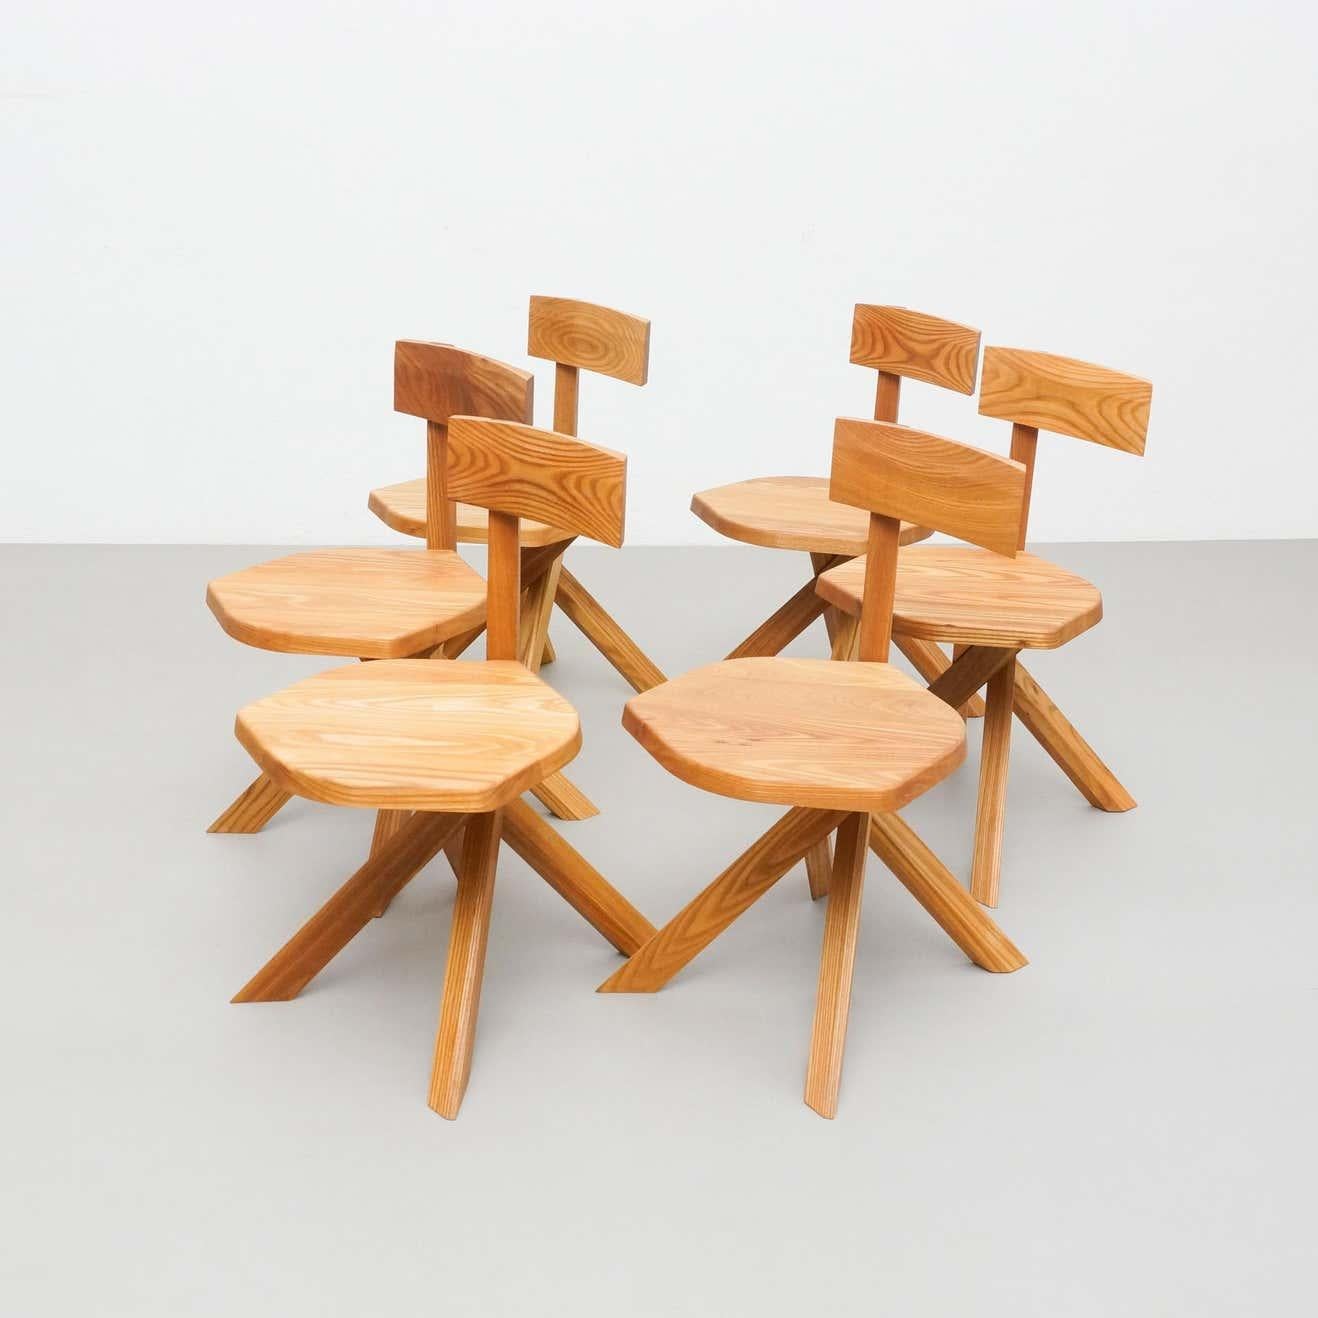 Ensemble de six chaises conçues par Pierre Chapo, vers 1960.
Fabriqué par Chapo Creation en France, 2020.
Bois d'orme massif estampillé.

En bon état d'origine, avec une usure mineure conforme à l'âge et à l'usage, préservant une belle